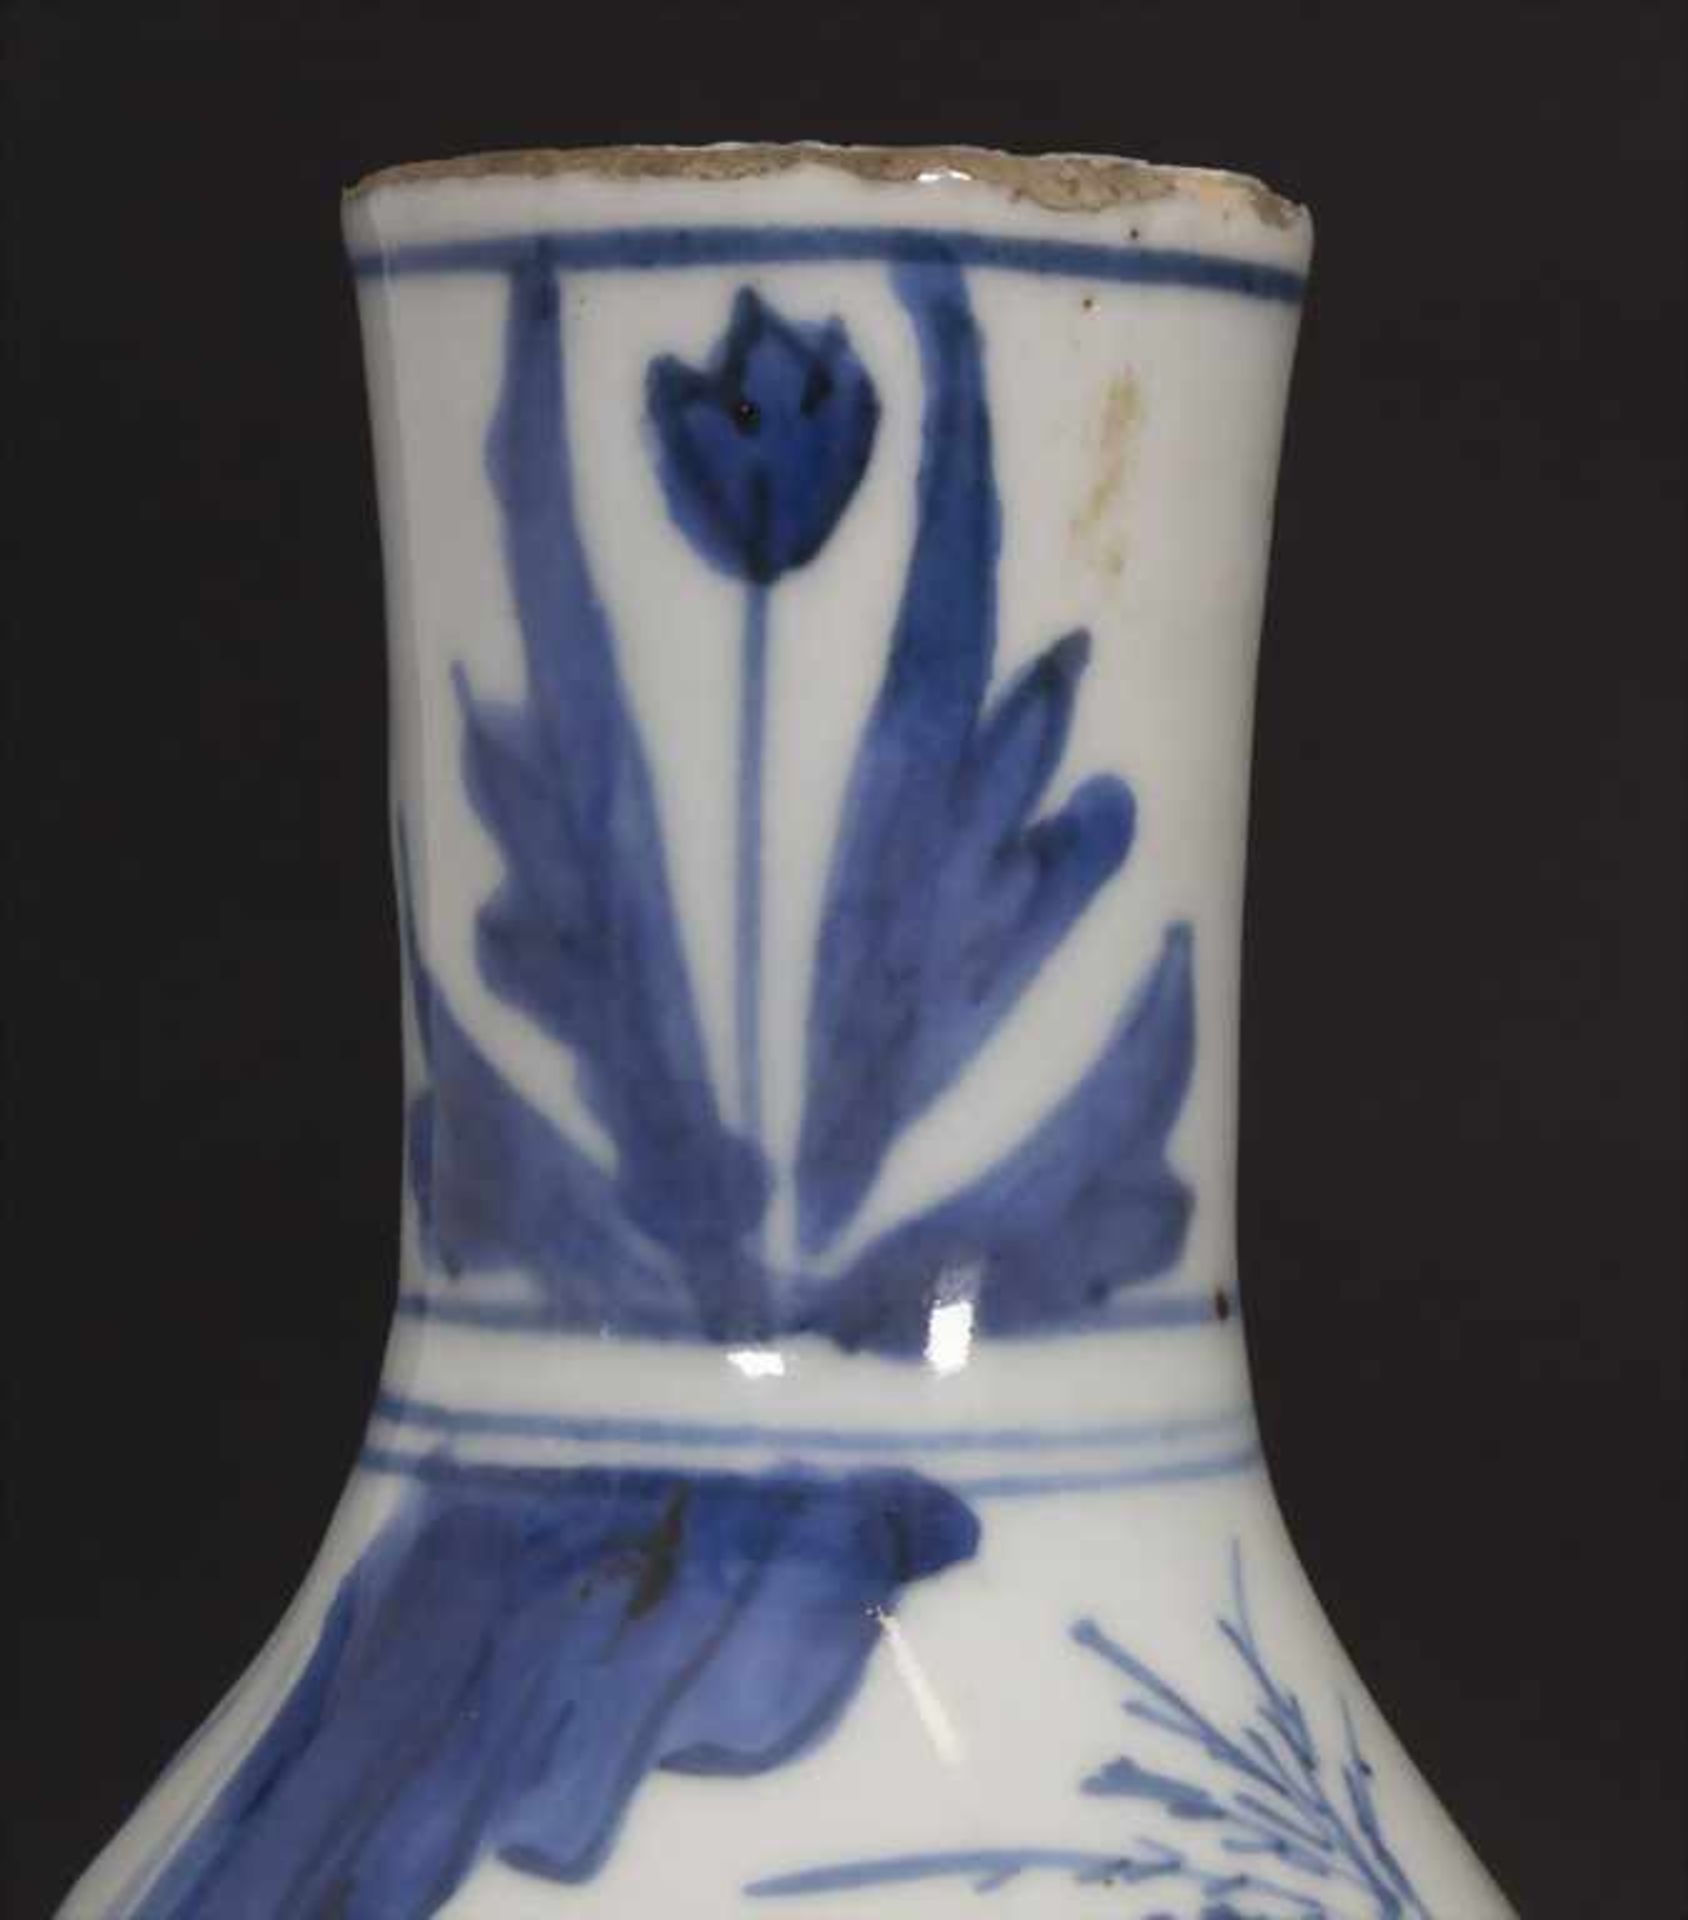 Kalebassenvase / A calabash vase, China, wohl 17. Jh.Material: Porzellan, blaue Unterglasurmalerei, - Bild 6 aus 17